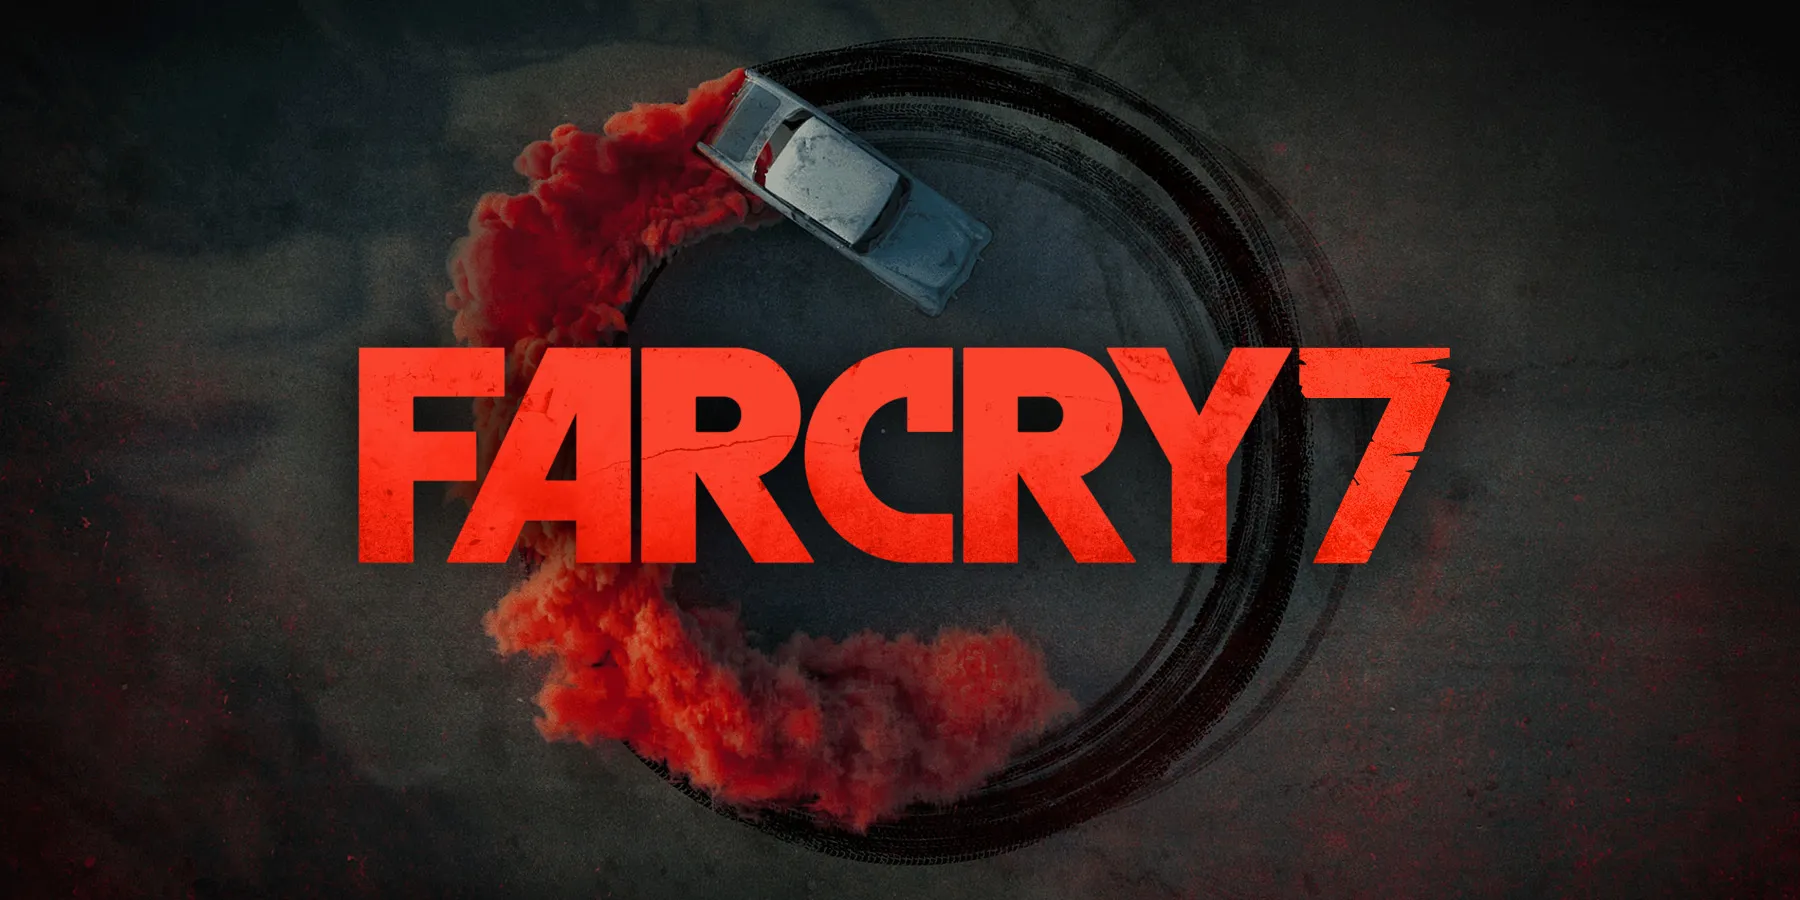 Cuerpo de Far Cry 7